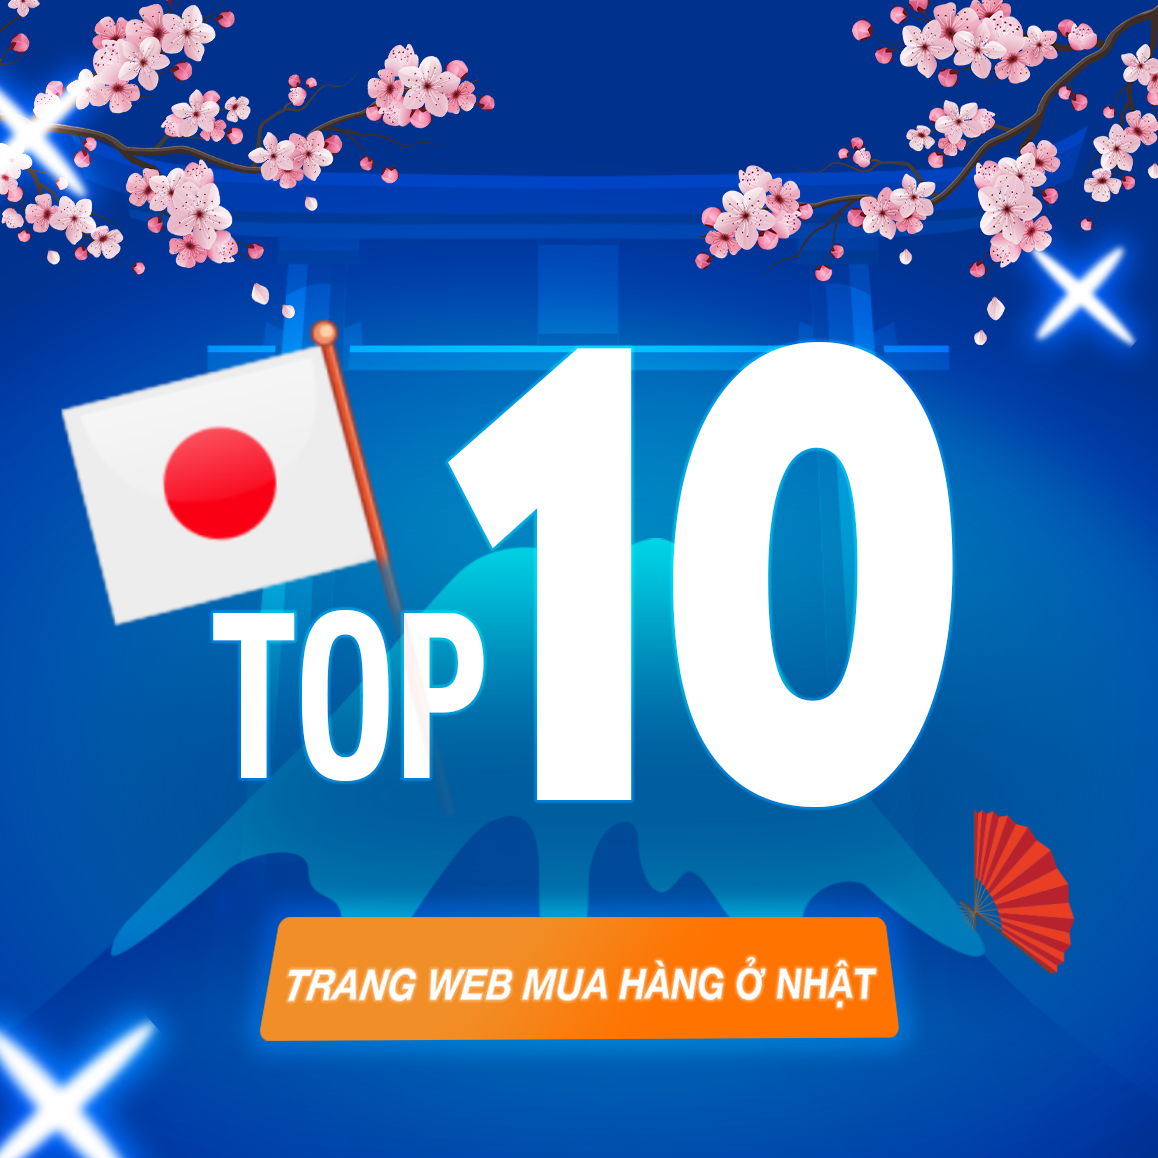 Top 10 các trang web mua hàng Nhật Bản uy tín và phổ biến nhất